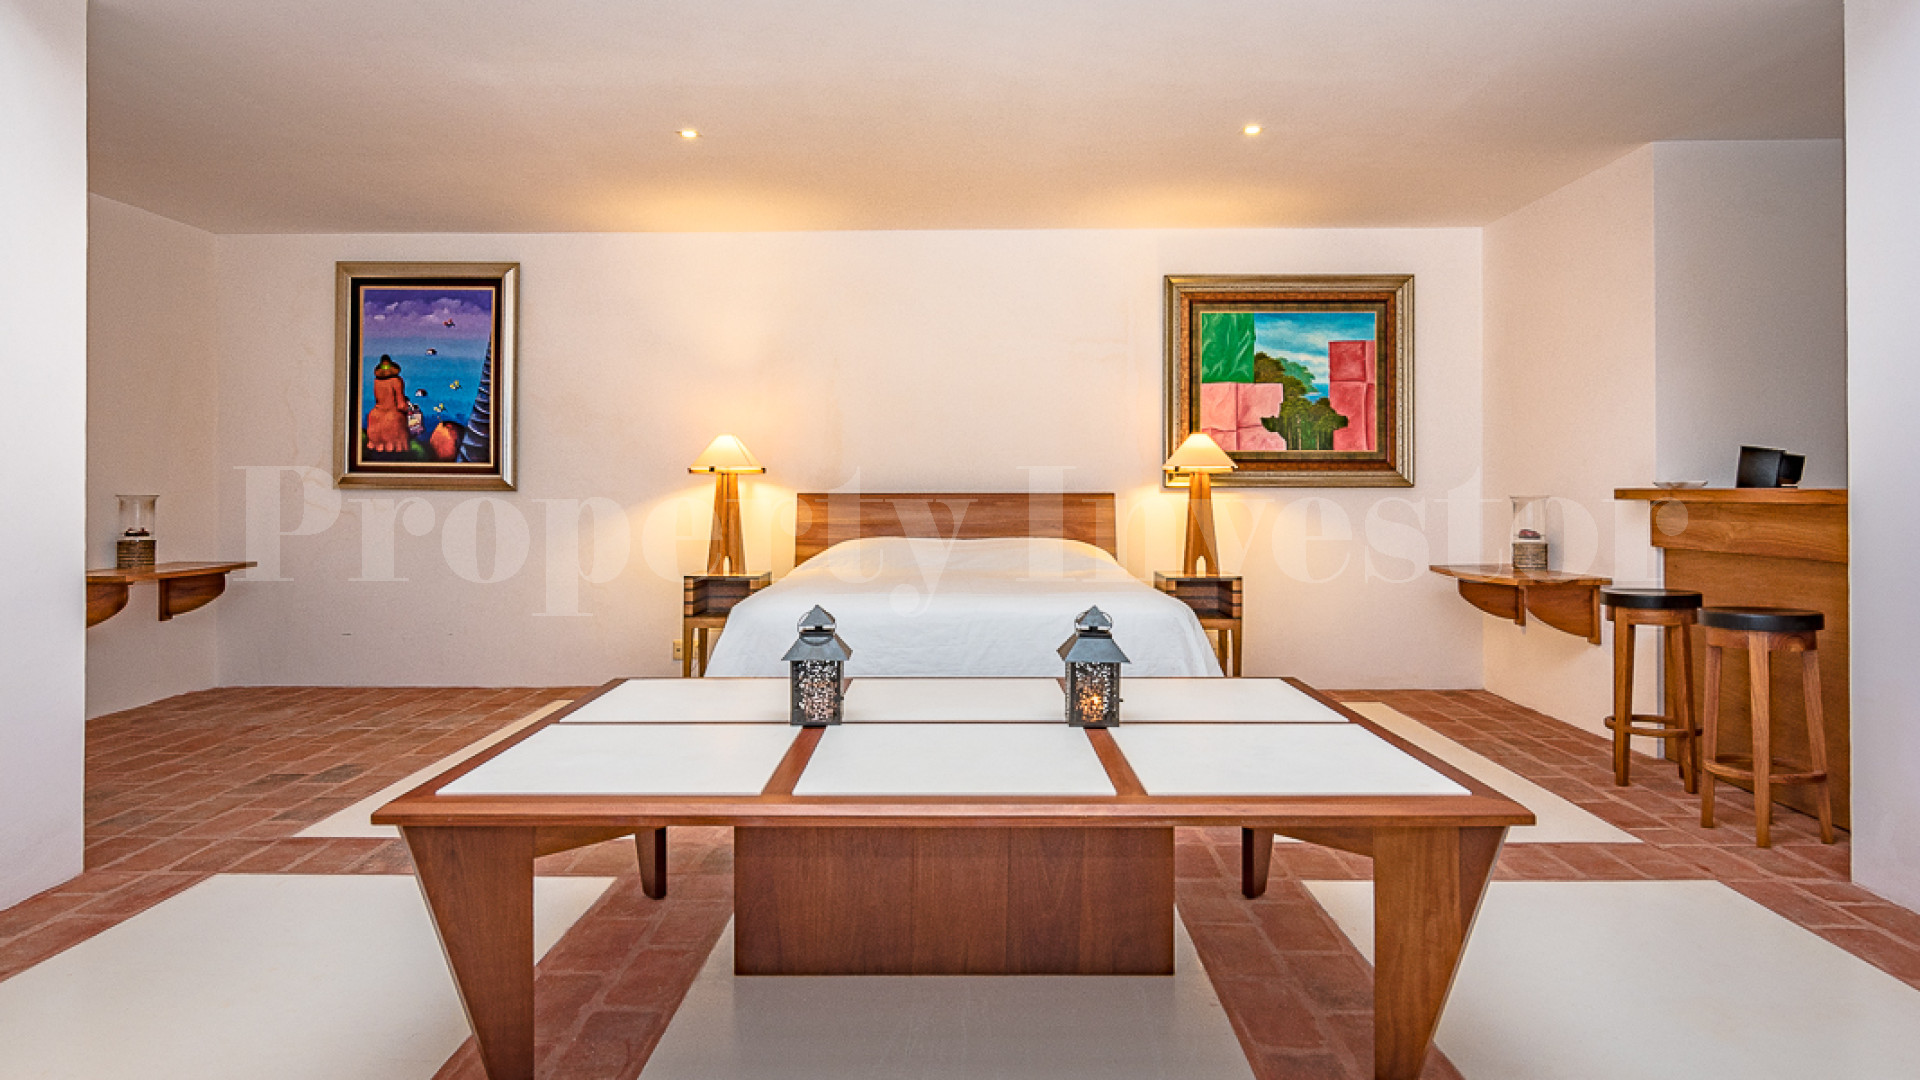 Фантастическая роскошная дизайнерская вилла с 5 спальнями с видом на океан в Педасе, Панама